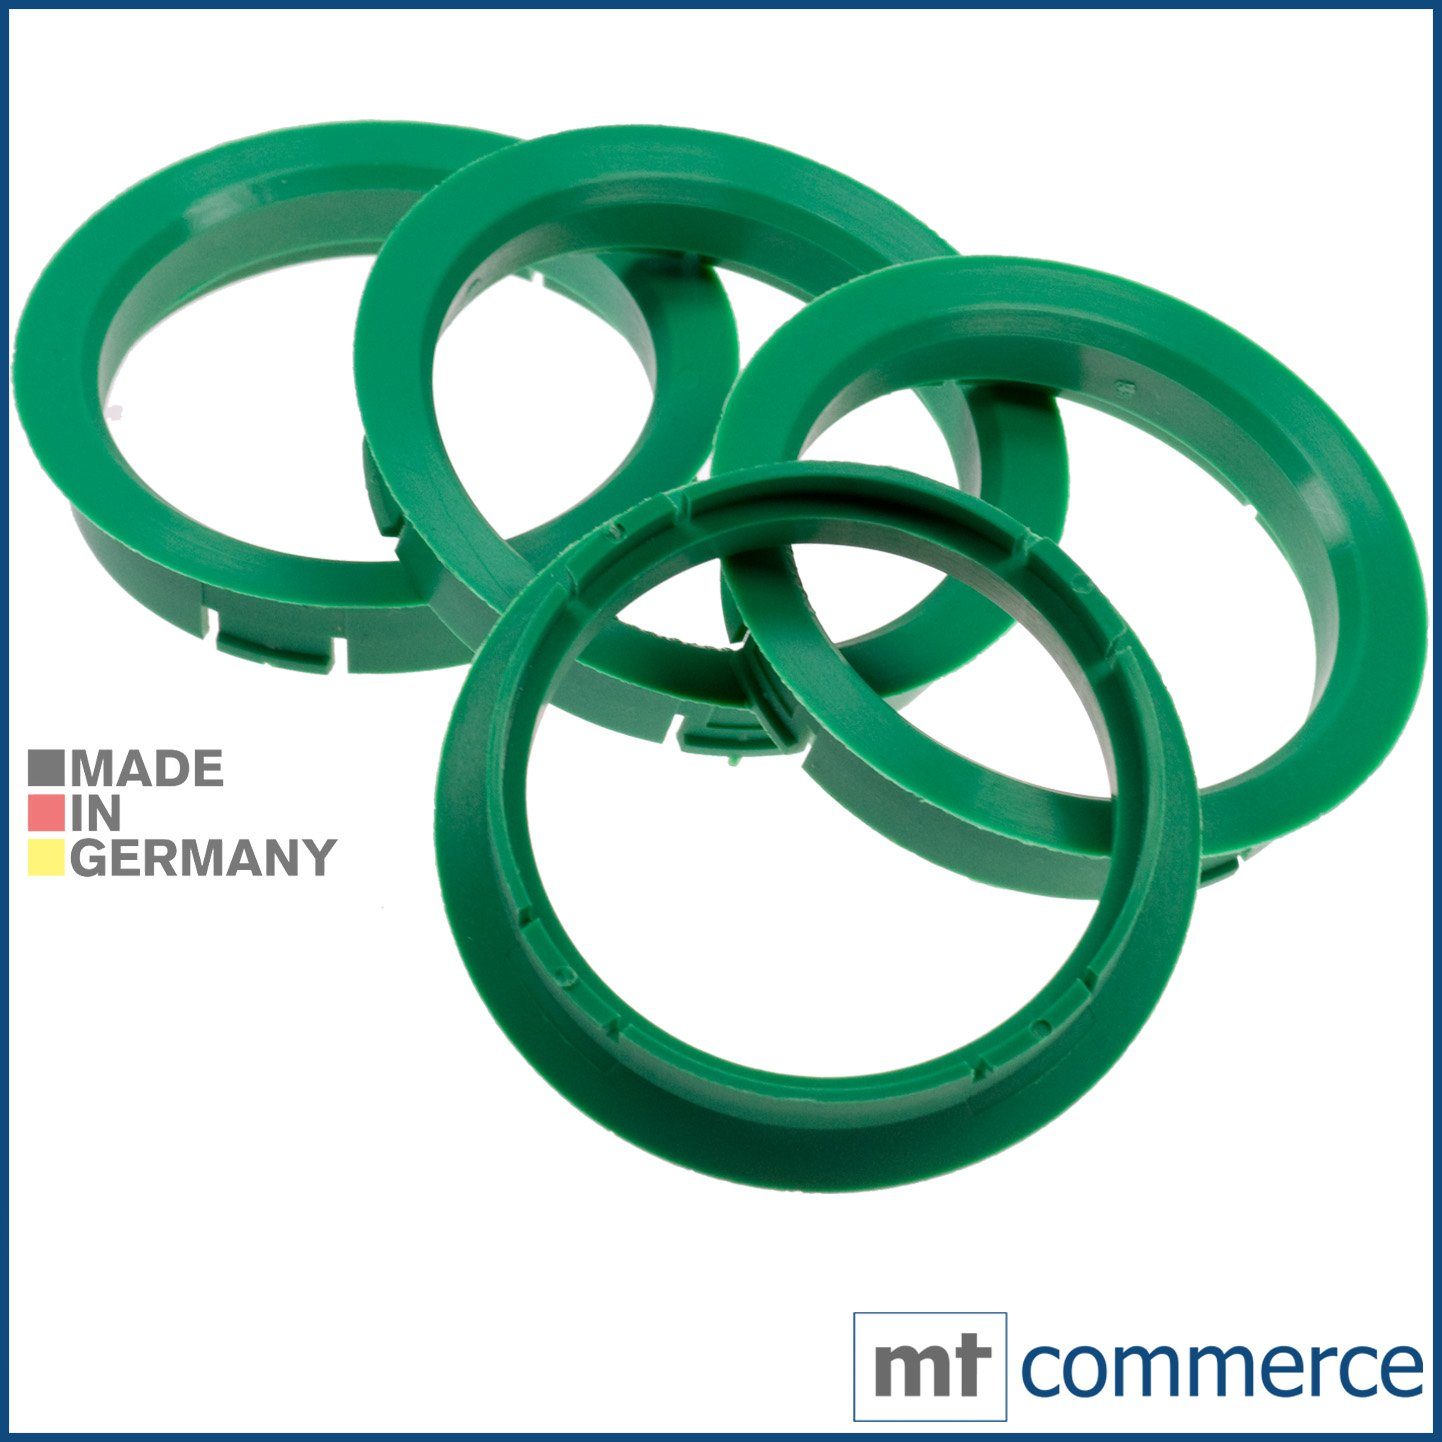 RKC Reifenstift 4X Zentrierringe 56,1 Made x Maße: Felgen in 64,0 mm Germany, Ringe grün